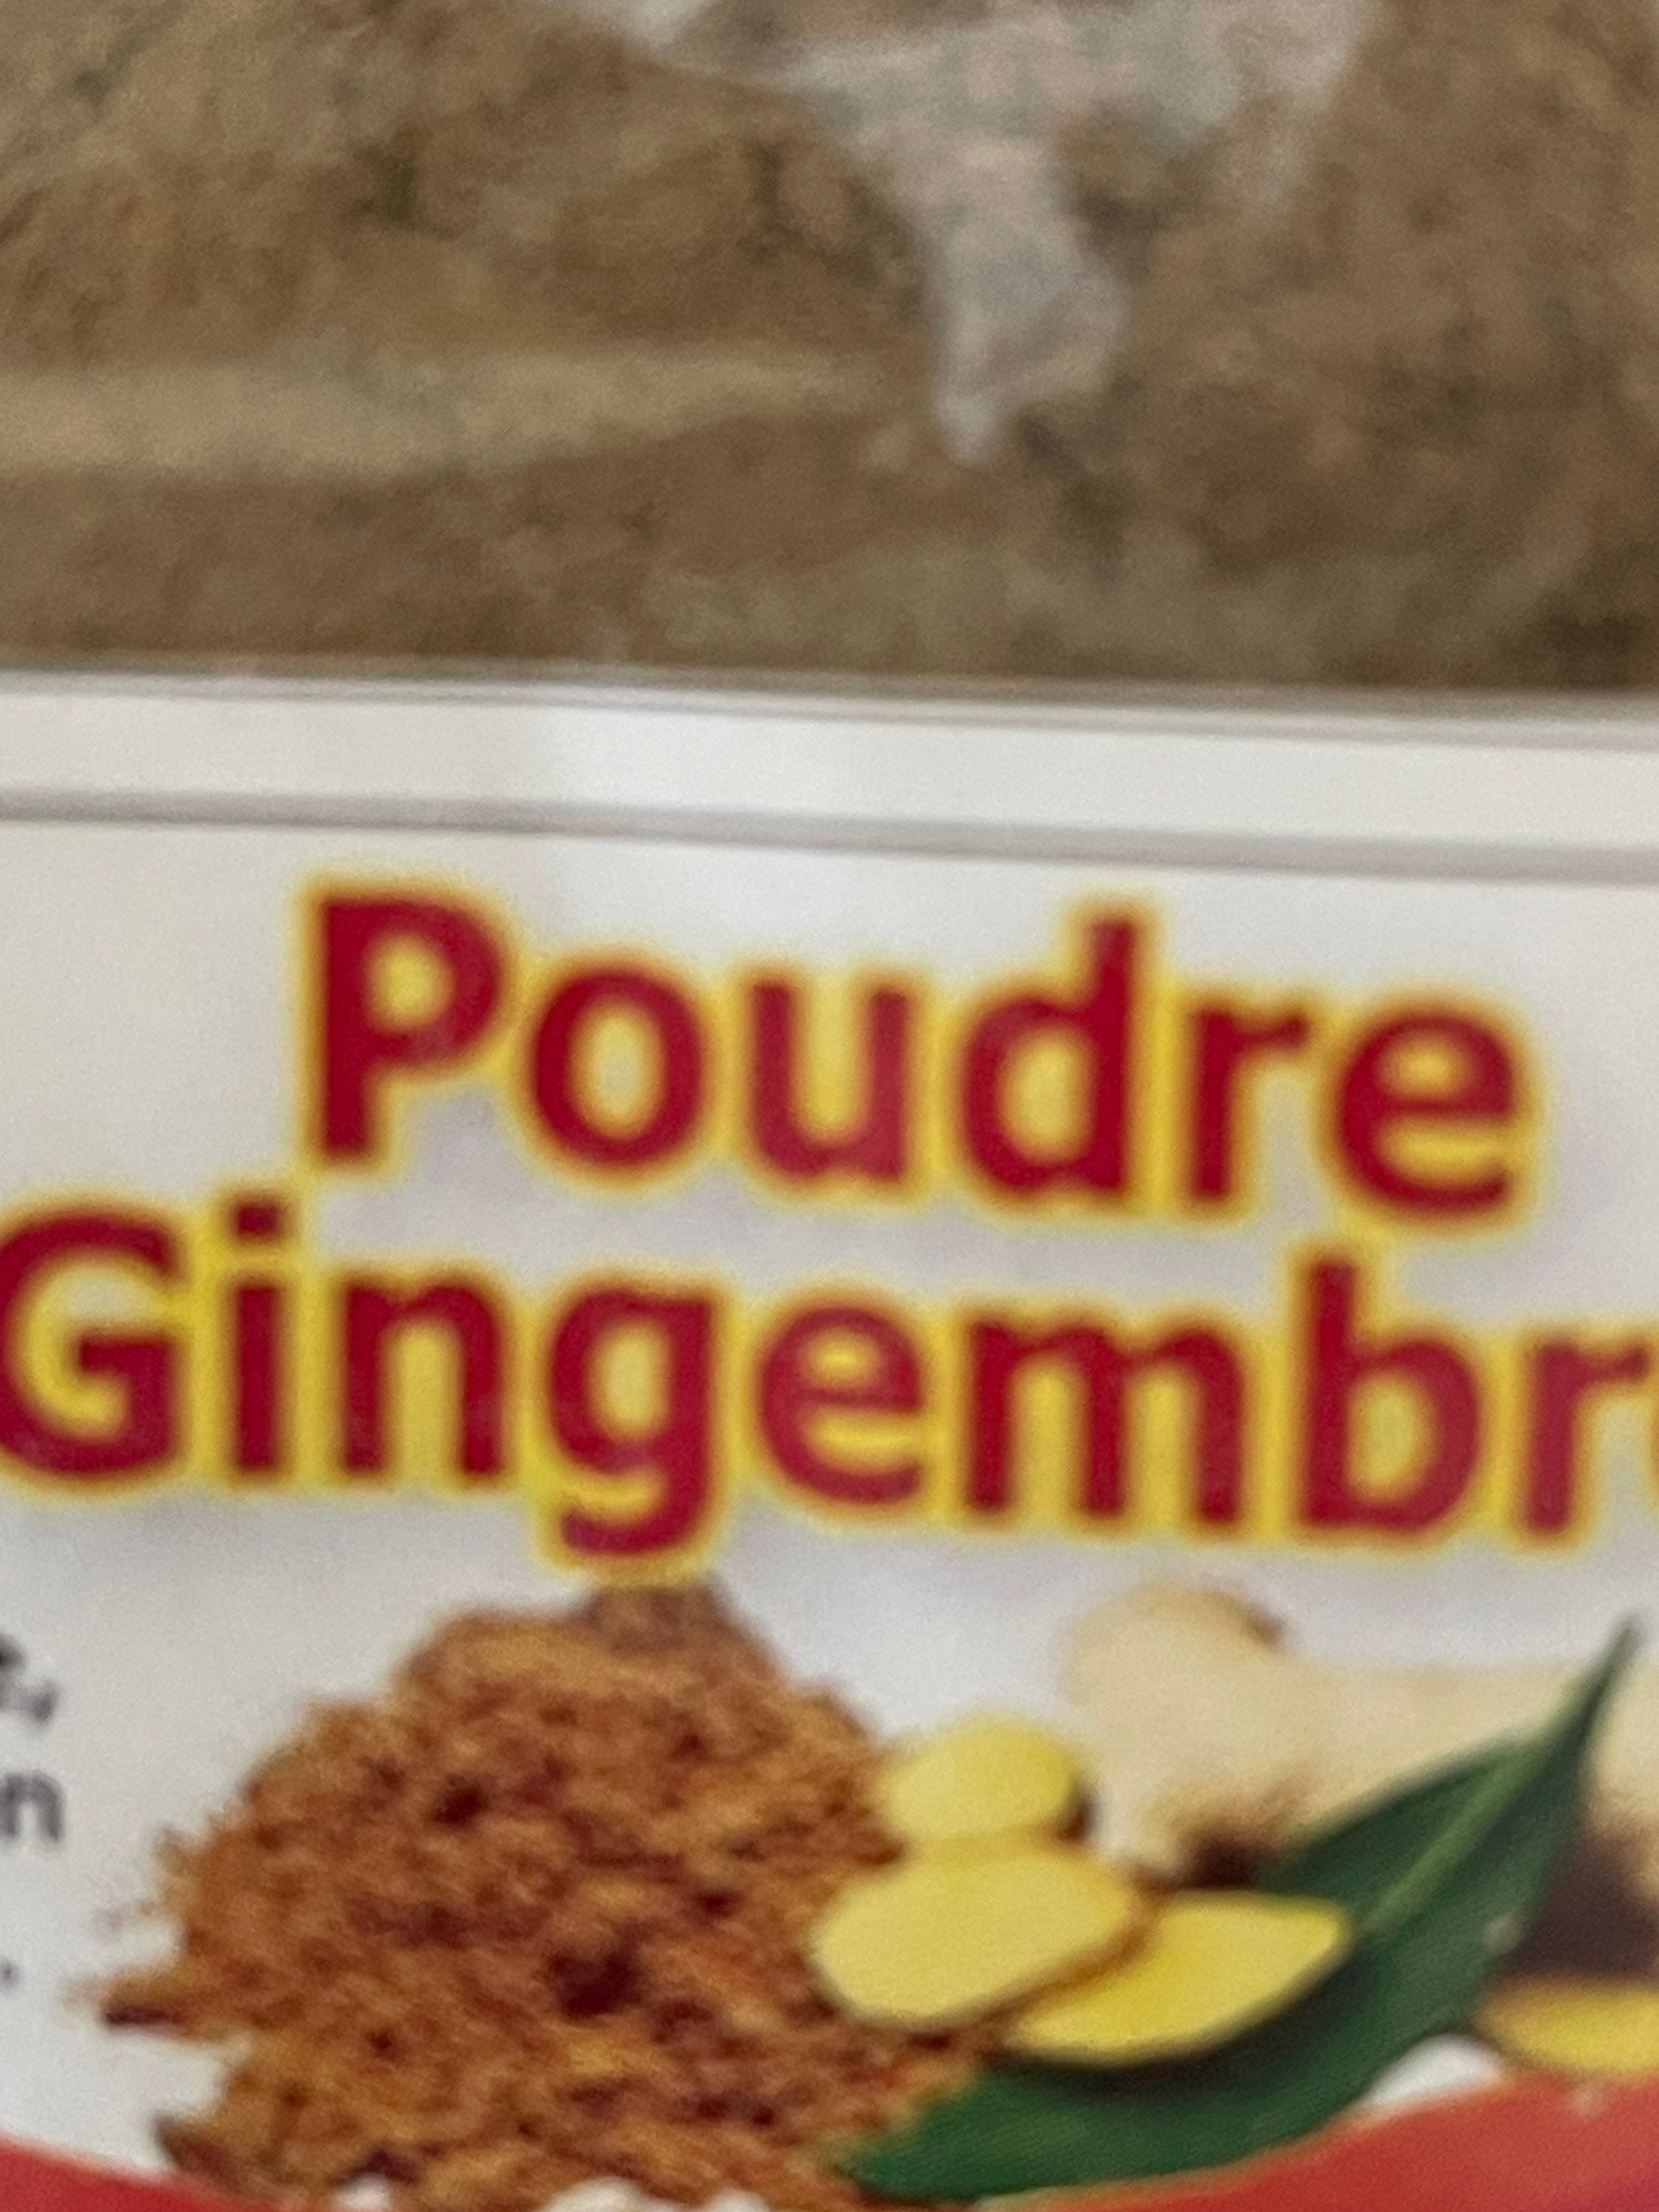 Poudre de gingembre/Ginger powder - Amidjor Agro-business